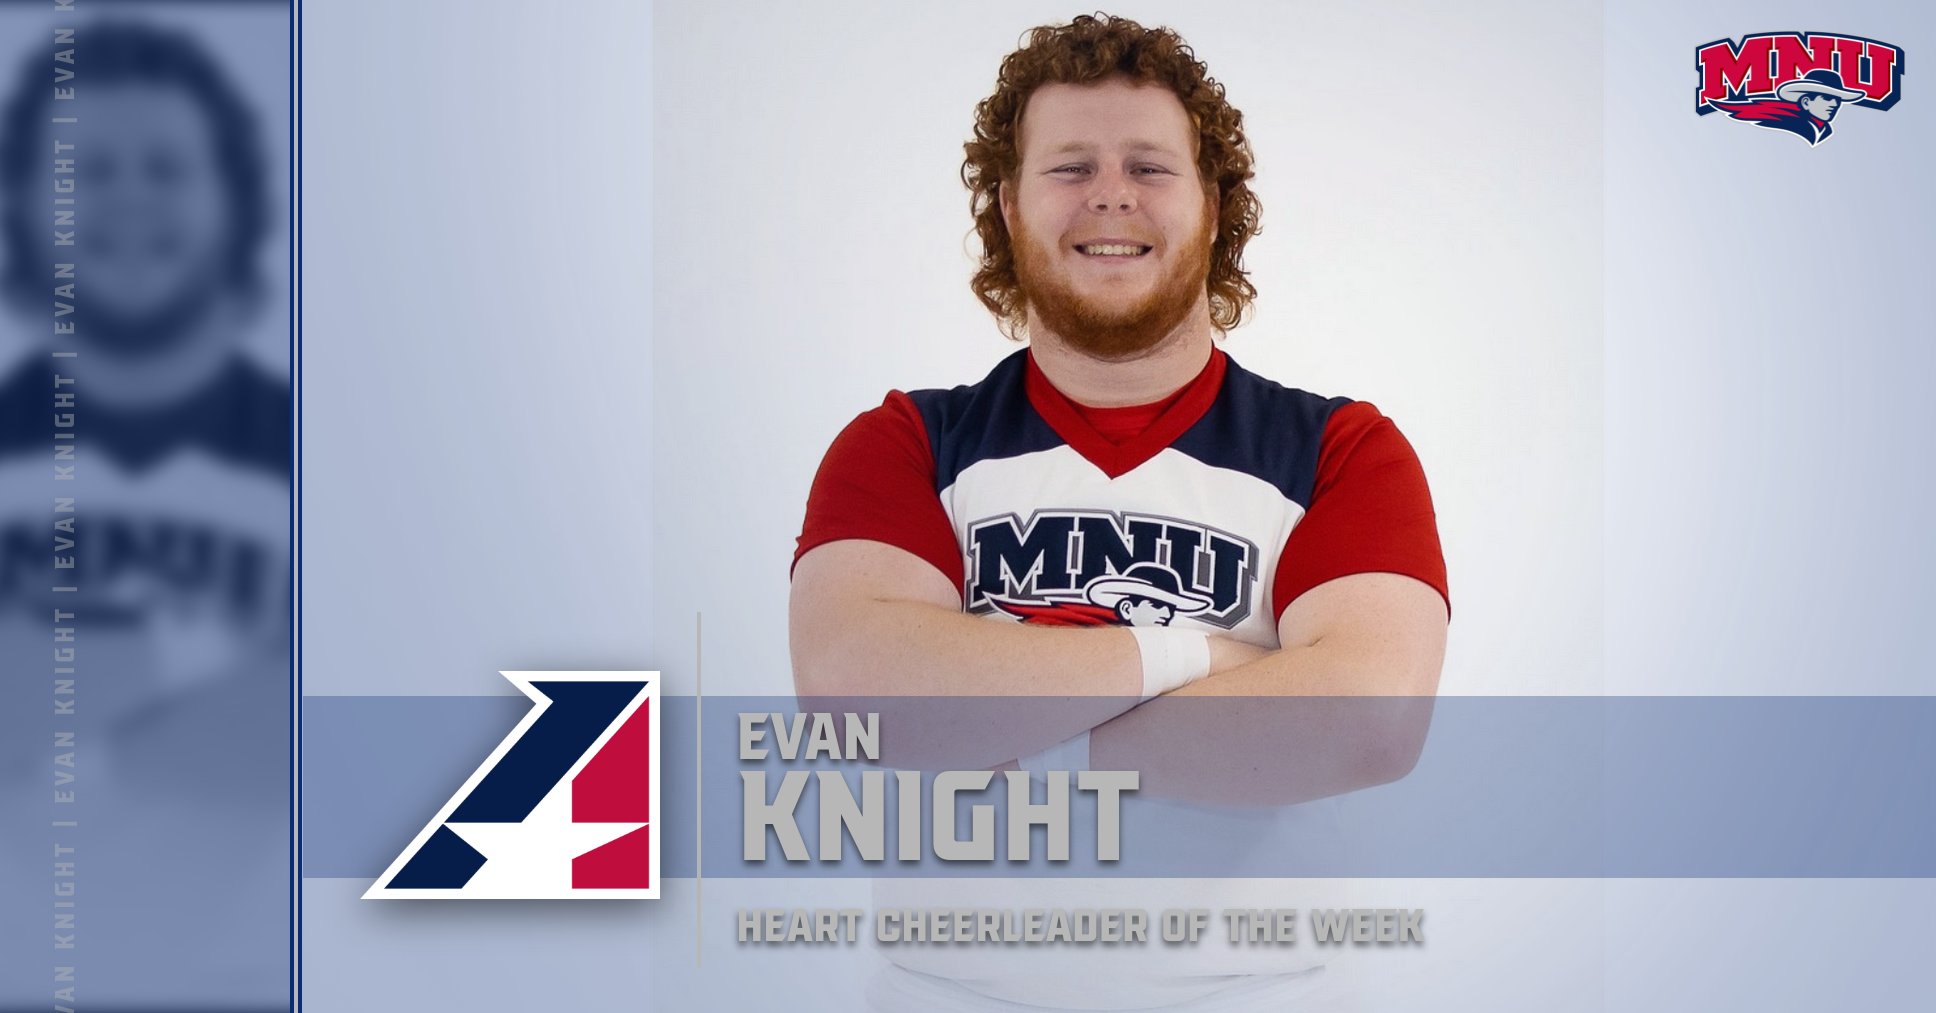 Evan Knight Selected Heart Cheerleader of the Week